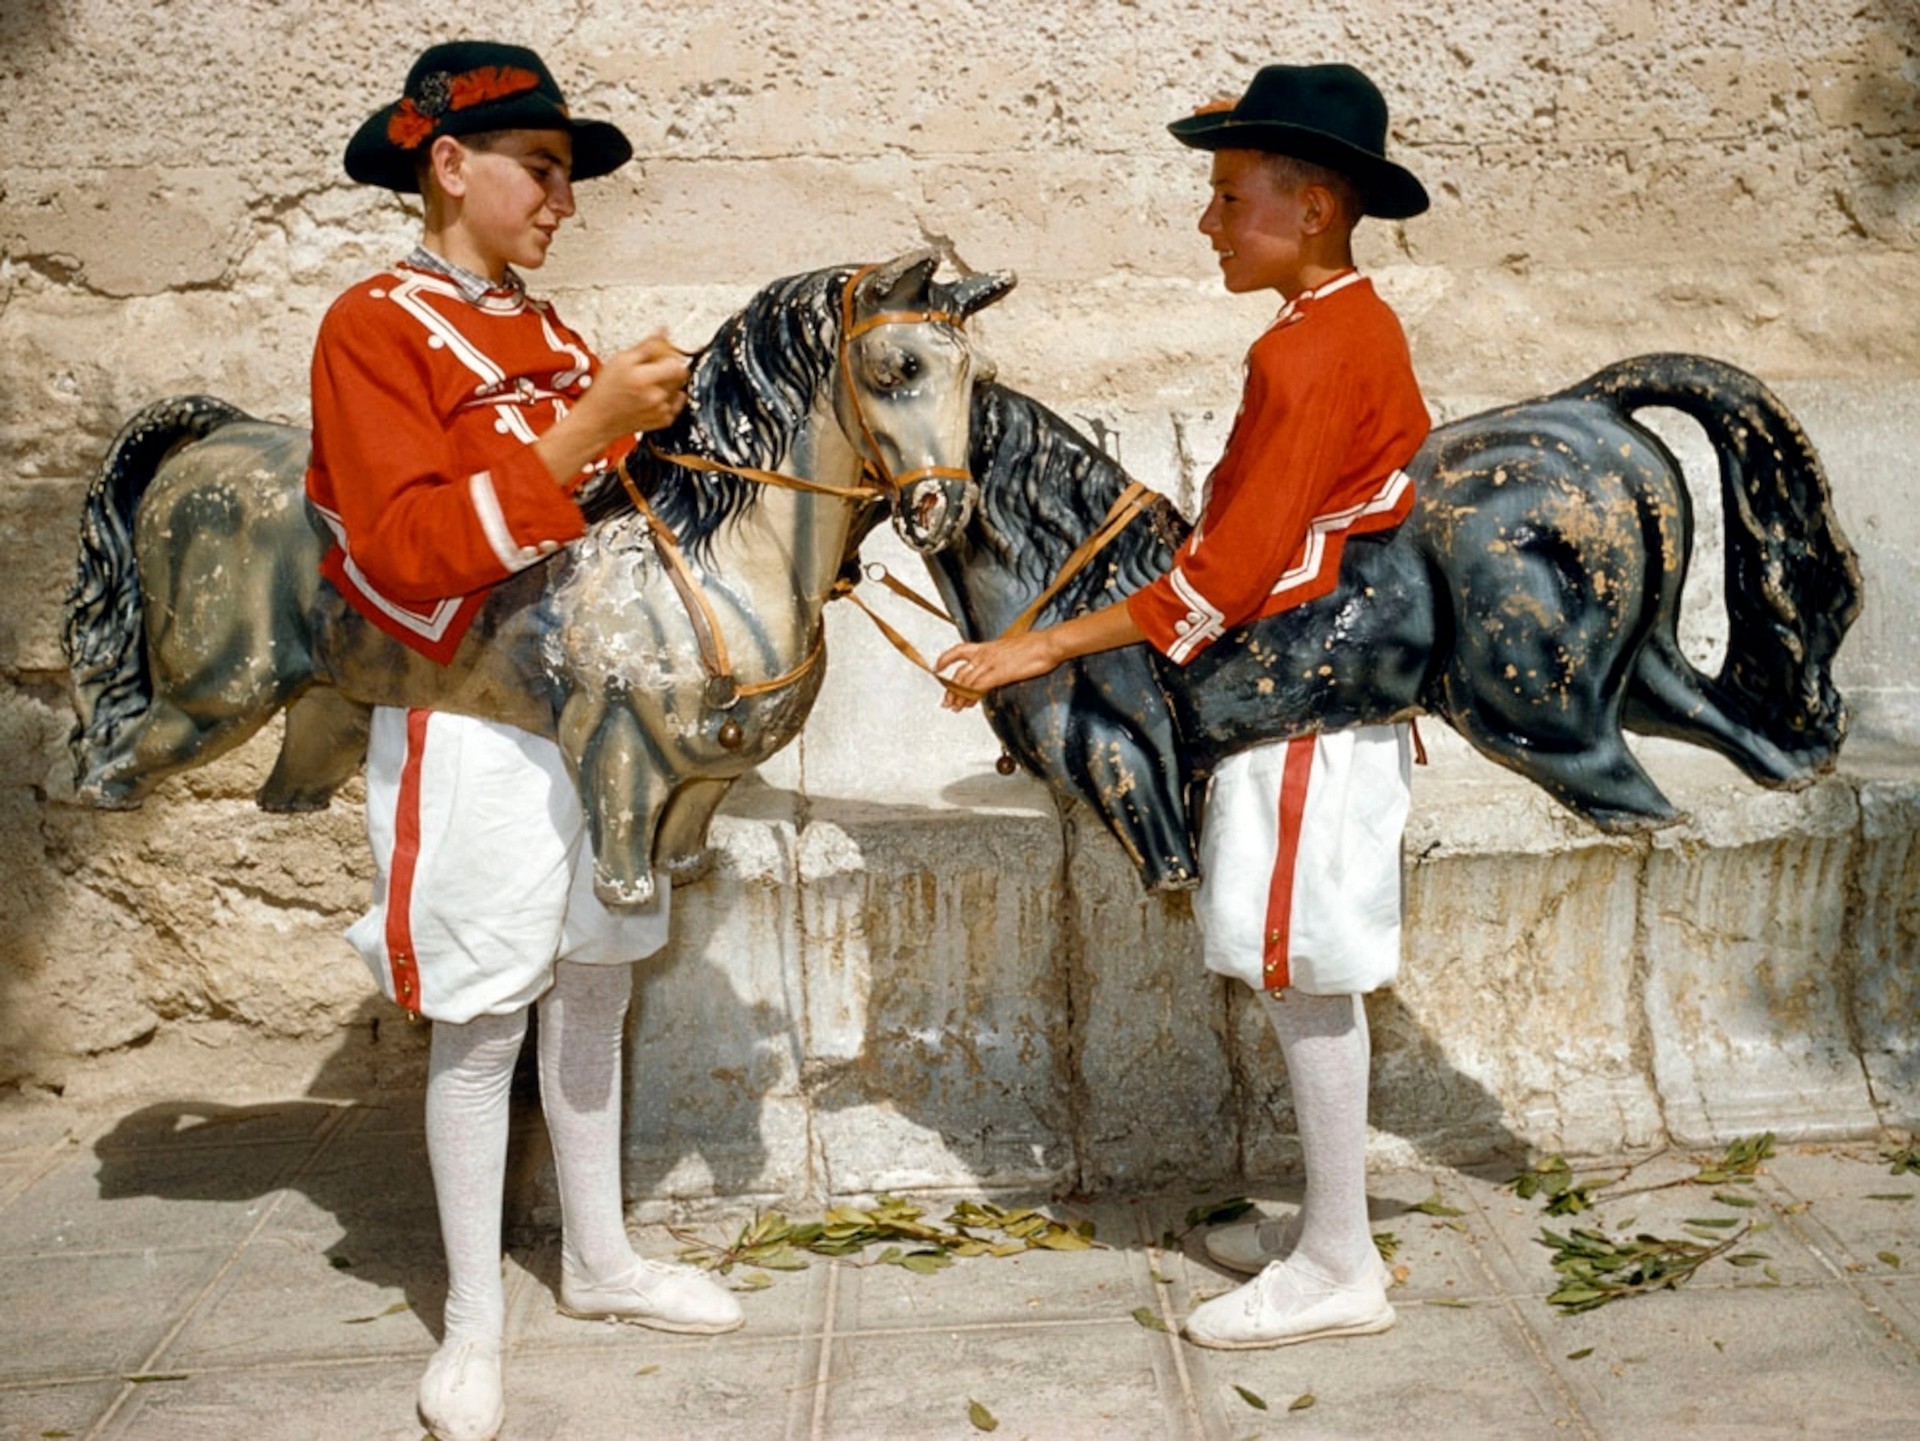 Перед танцем, Майорка, Испания, 1957. Фотографы Франк и Джин Шор